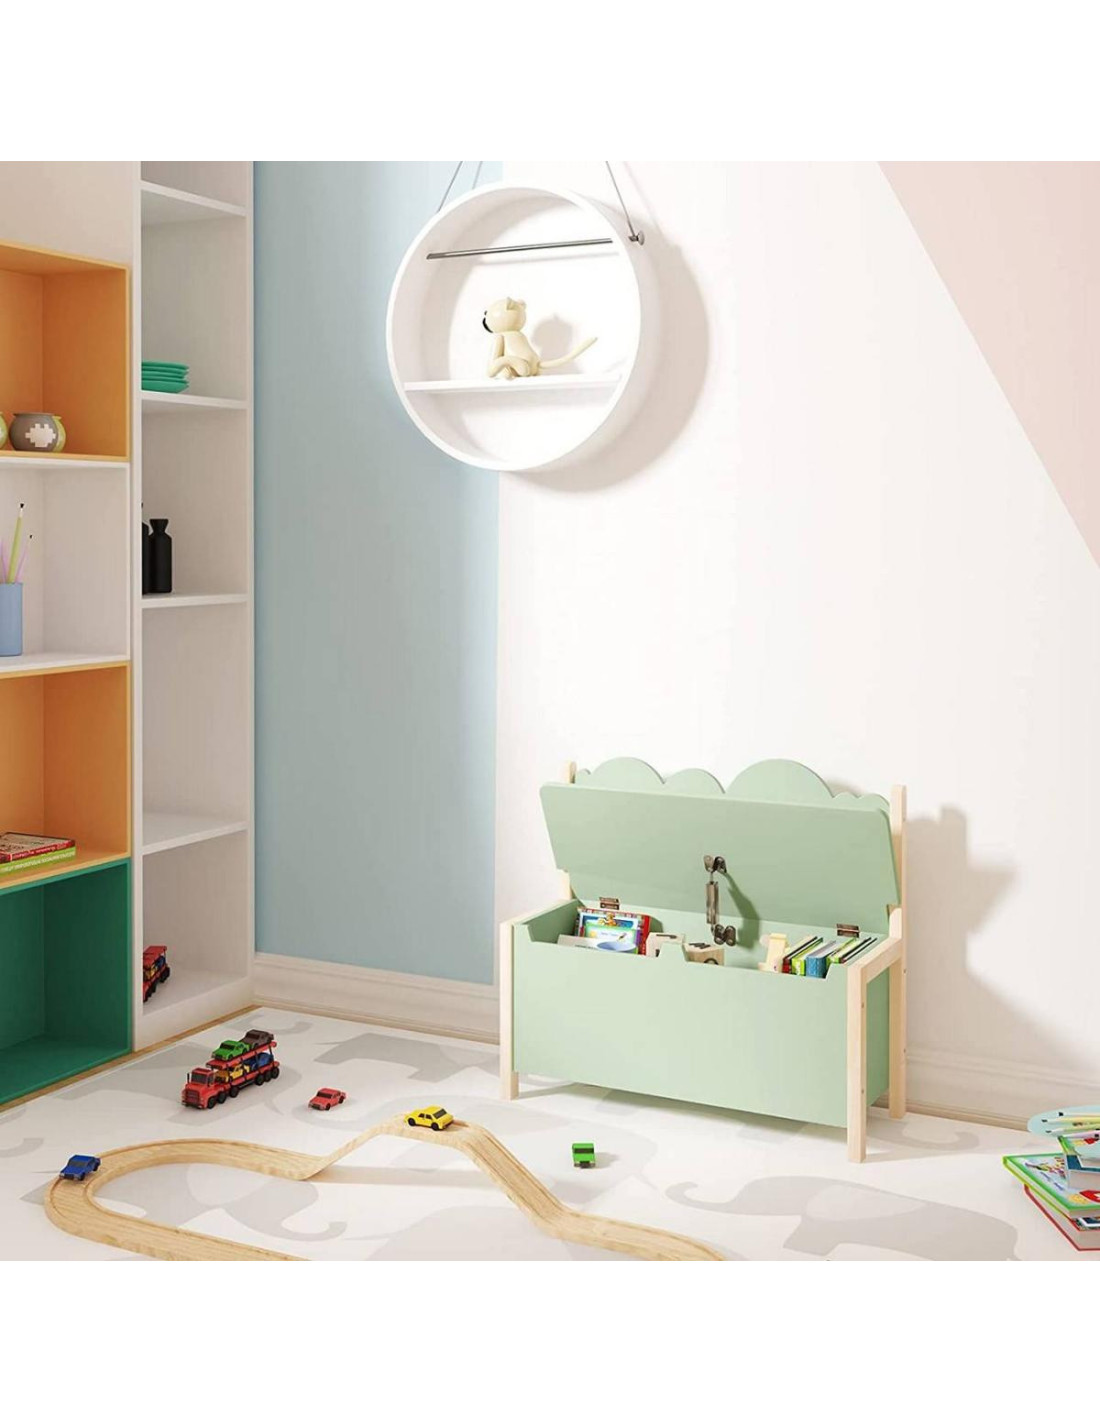 Banc enfant avec coffre à jouets intégré rangement jouet - Ciel & terre